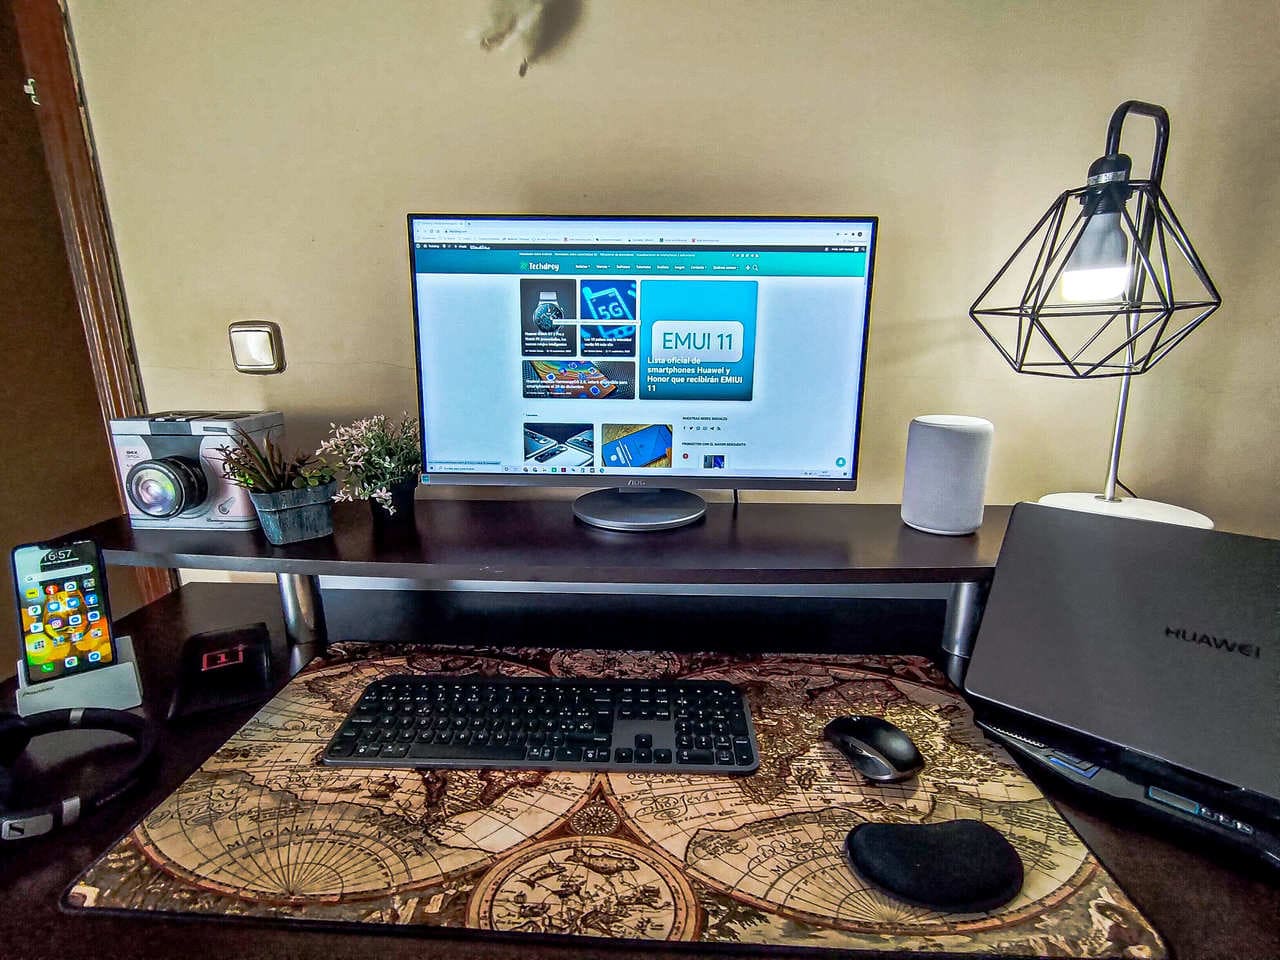 escritorio-zona-lugar-de-trabajo-de-estudio-monitor-ordenador-teclado-raton-alfombrilla-reposamuñecas-smartphone-auriculares